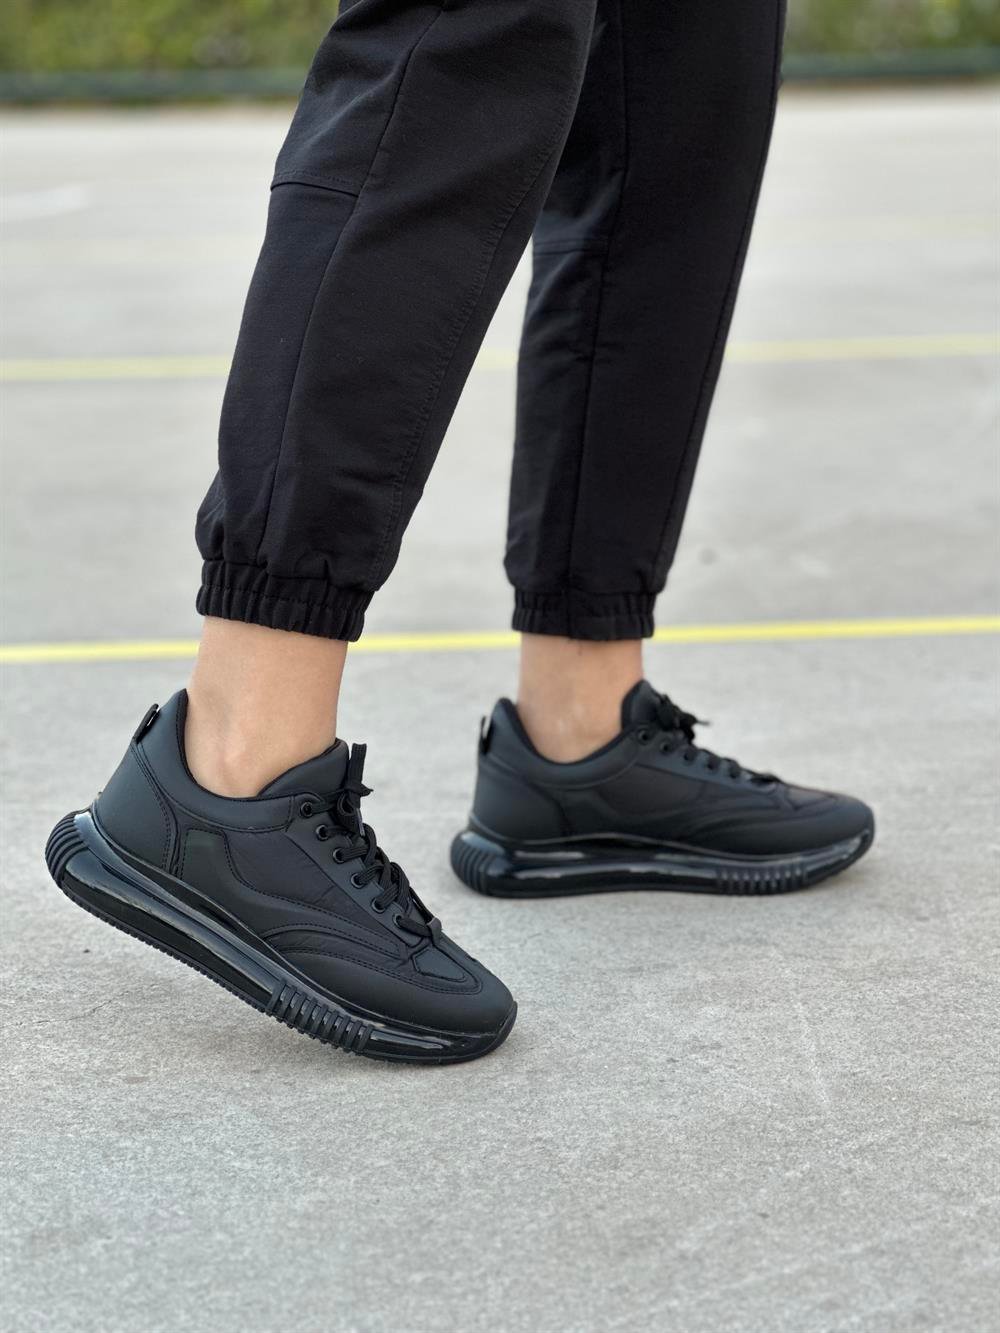 Martin Siyah Paraşüt Kumaş Air Taban Bağcıklı Kadın Spor Ayakkabı